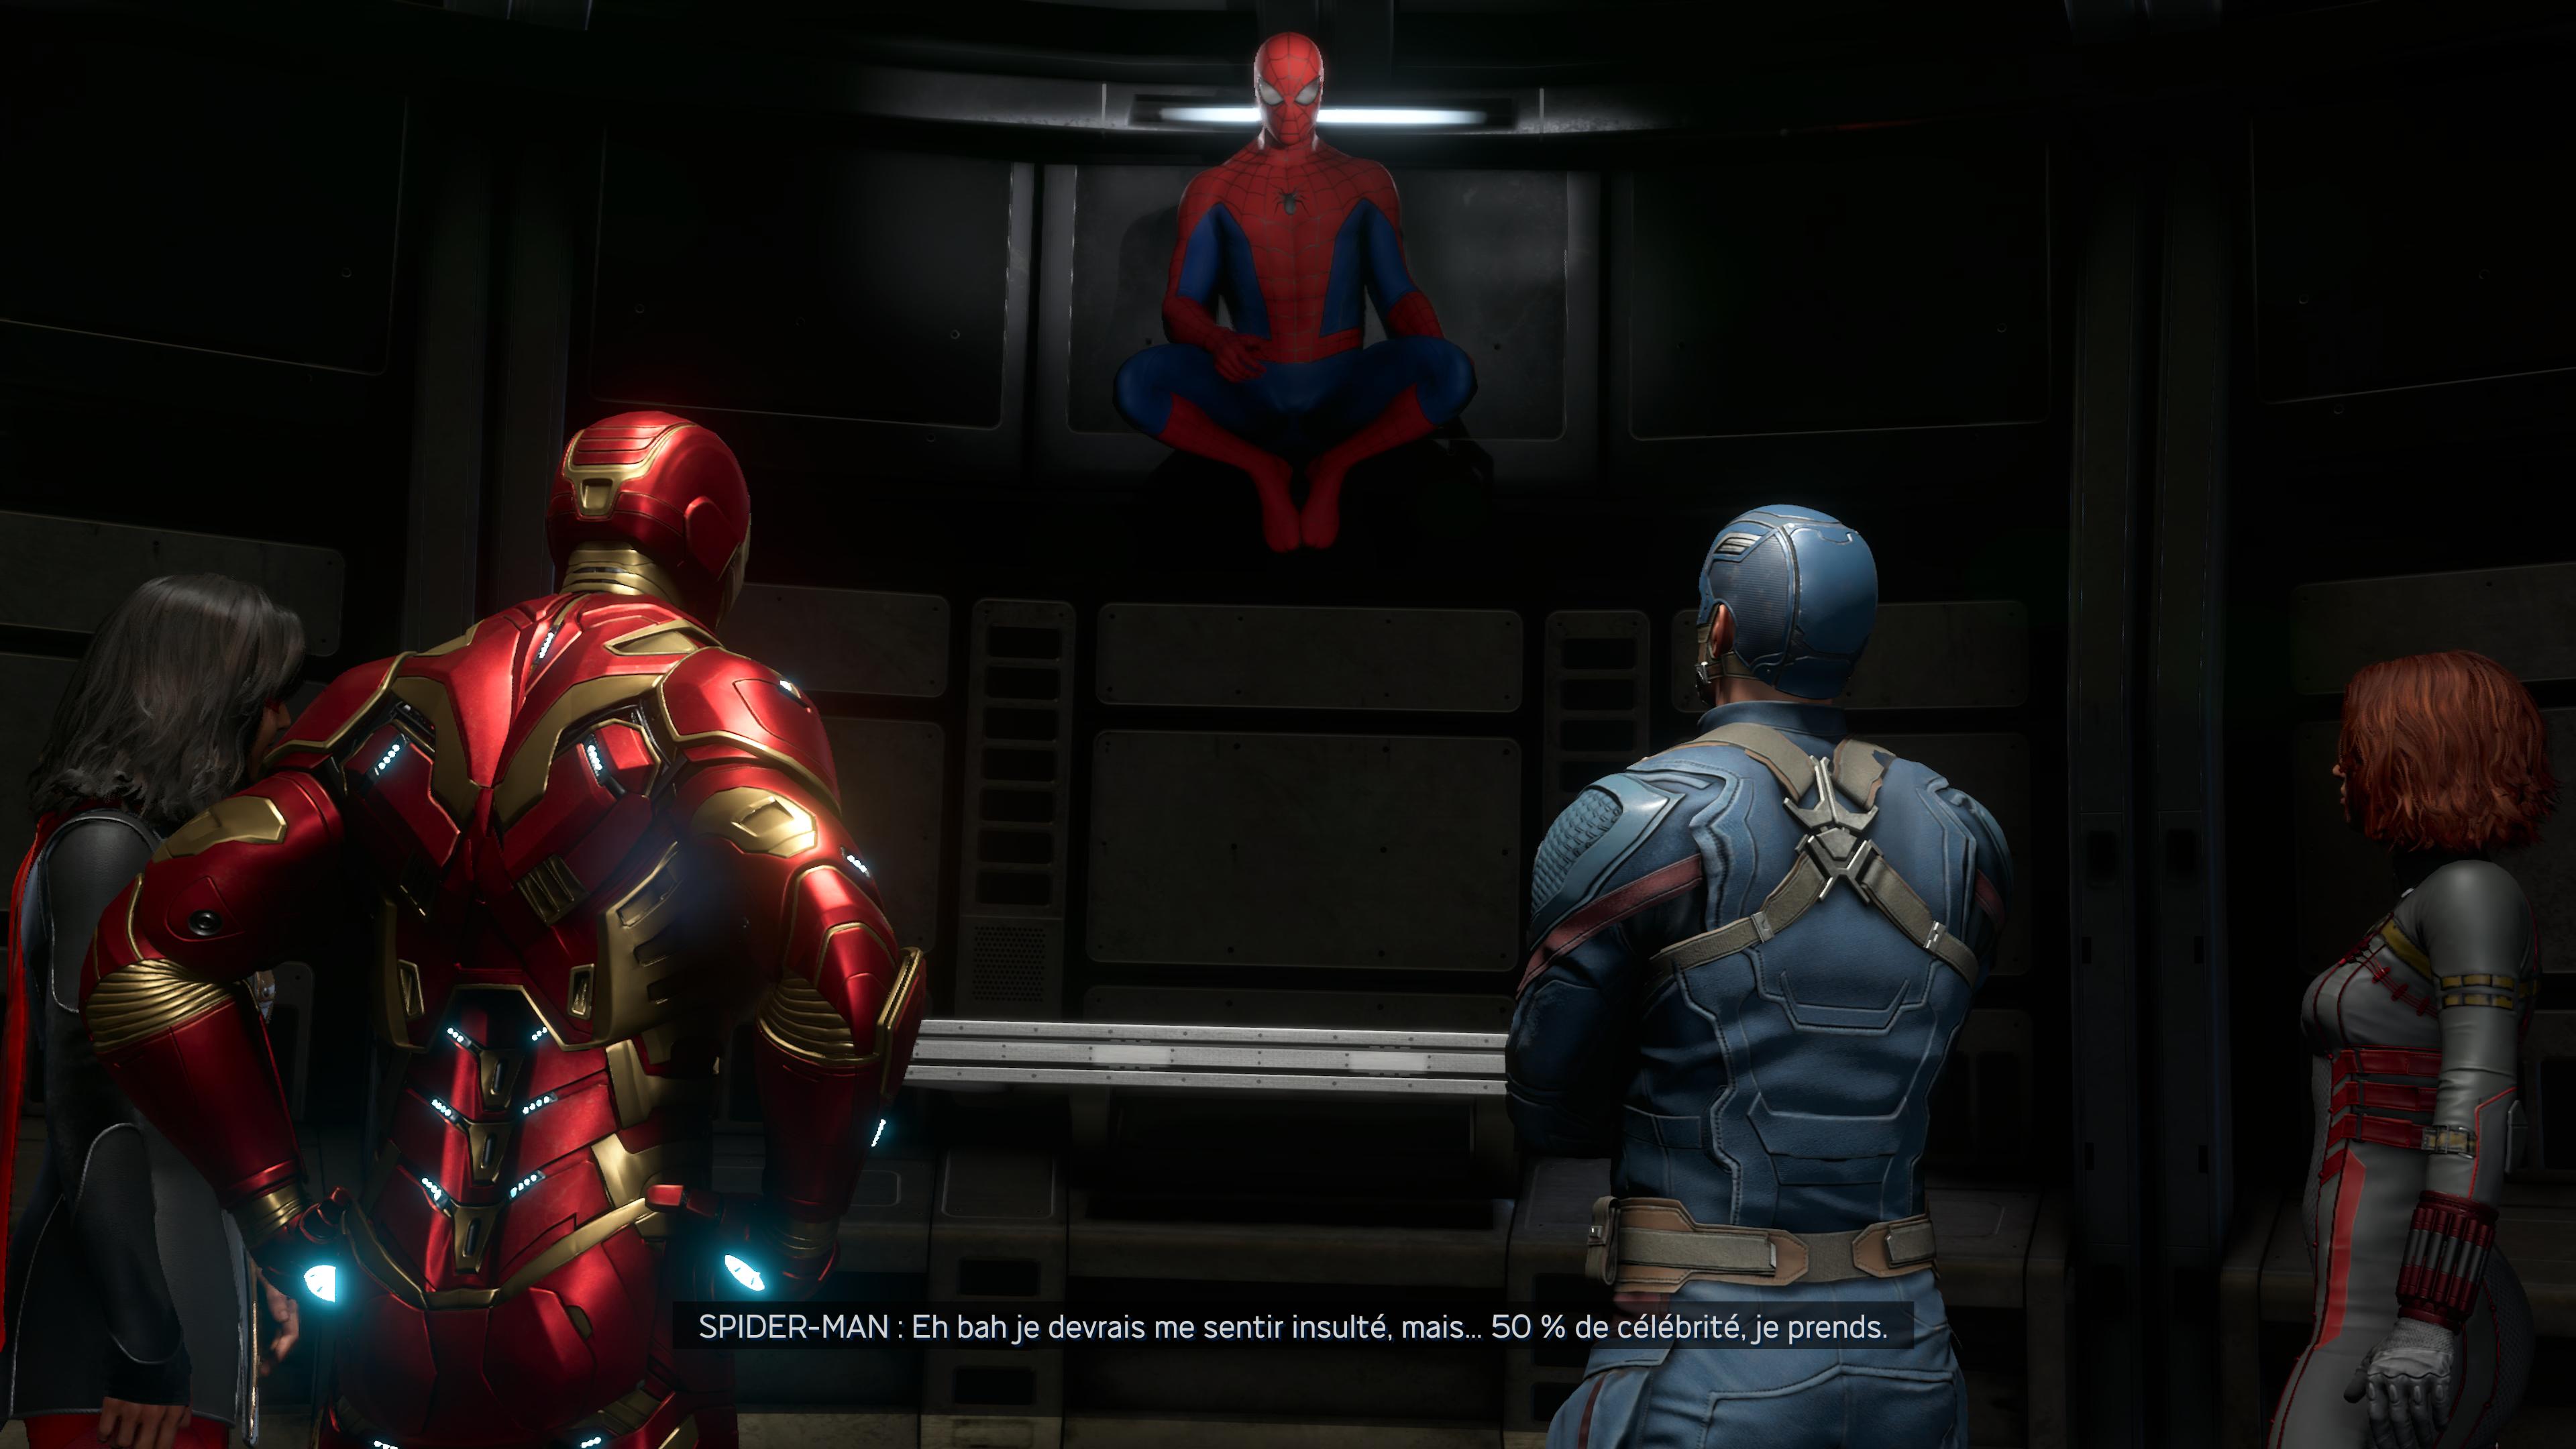 Marvel avengers spider man 2 3